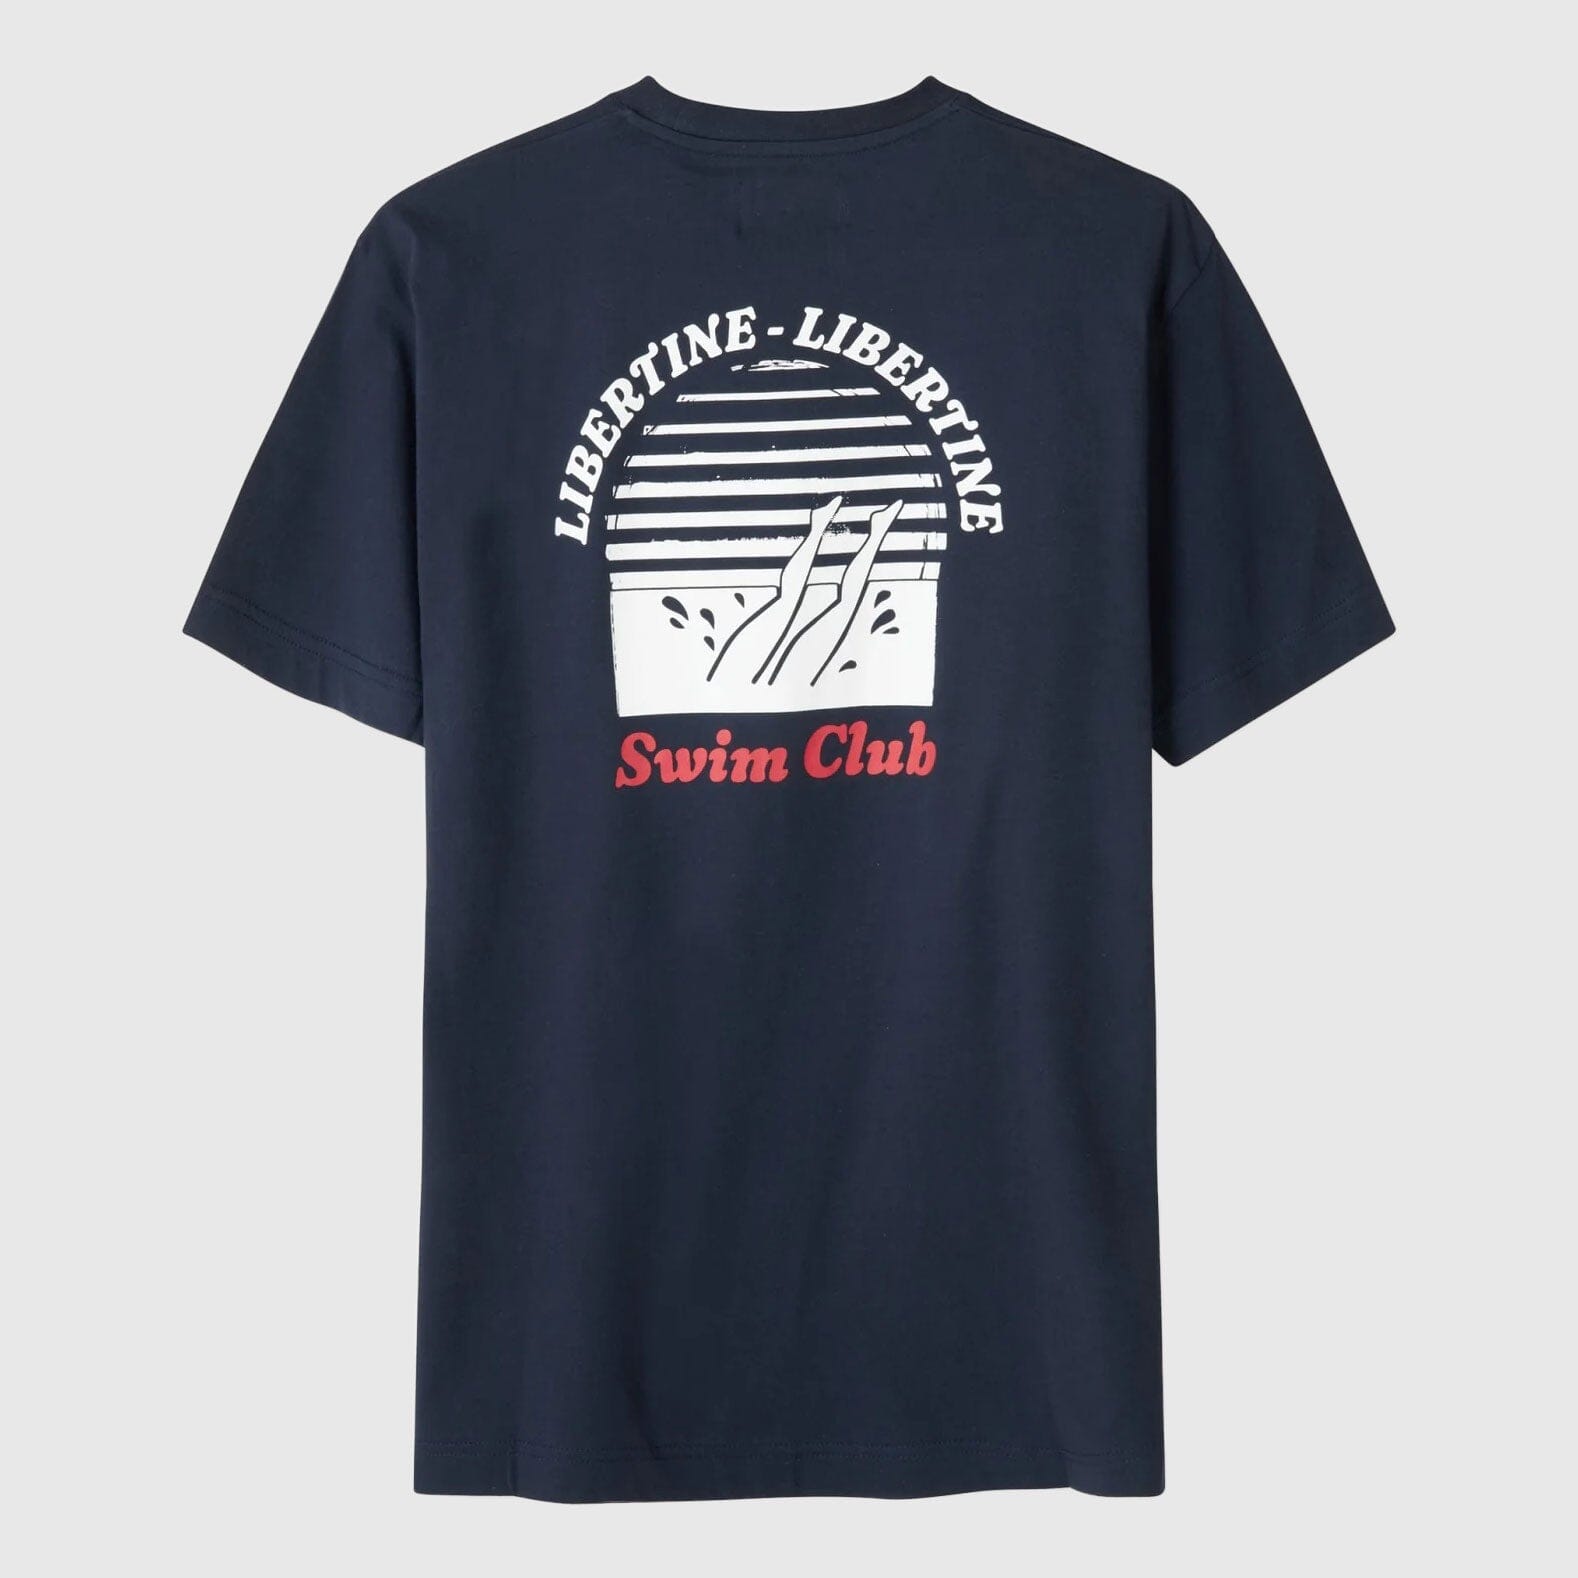 Libertine-Libertine Beat Swim Club T-Shirt - Navy T-shirt Libertine-Libertine 